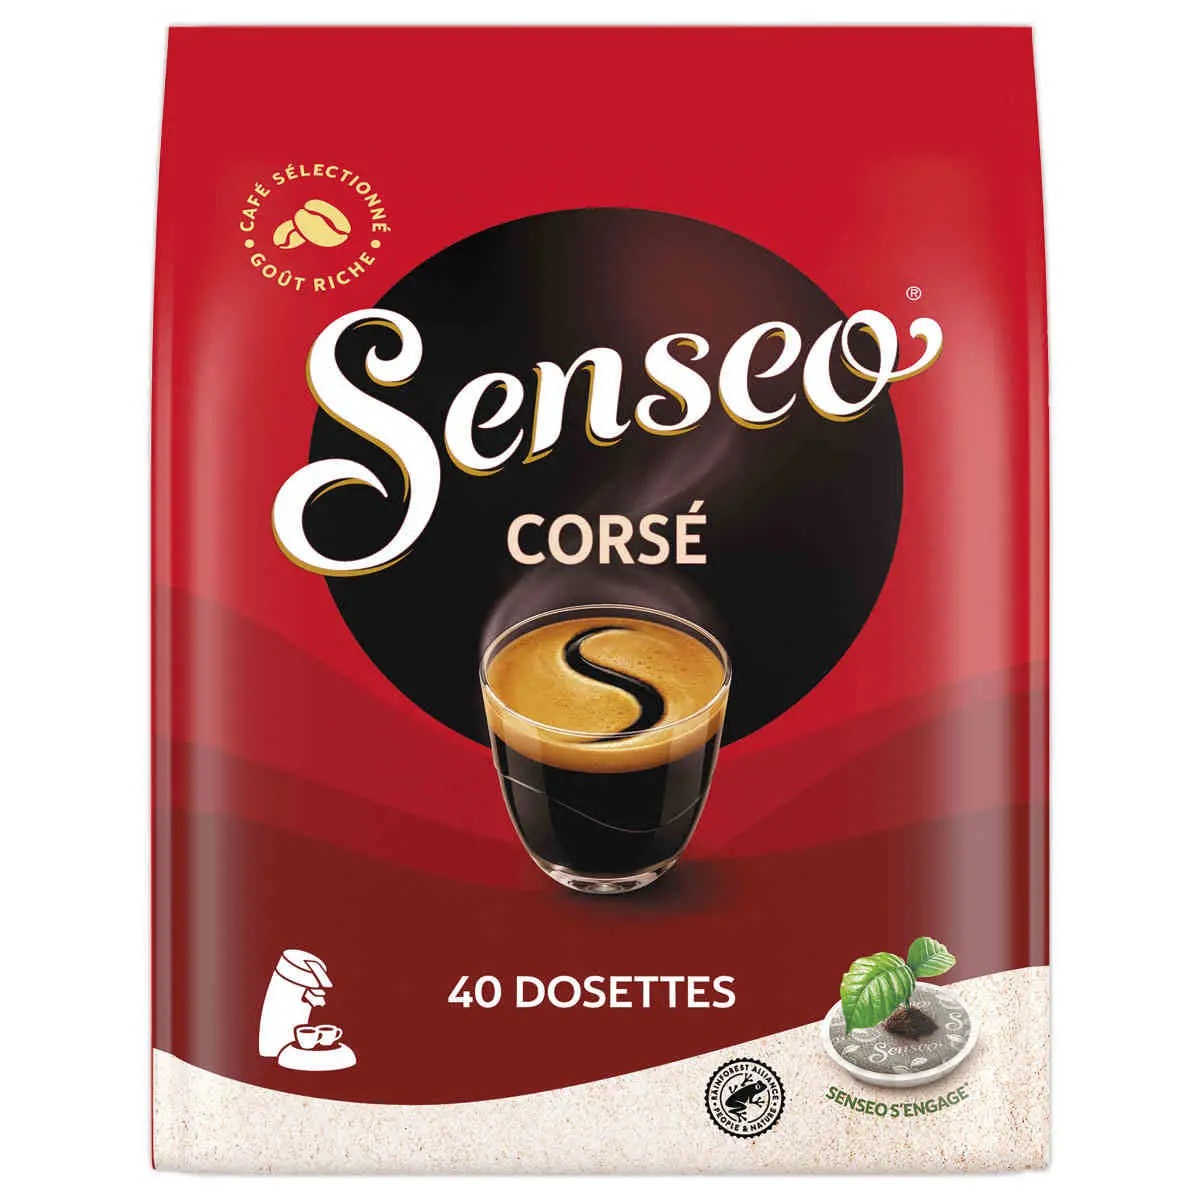 Dosettes de café Senseo Corsé - Paquet de 18 sur